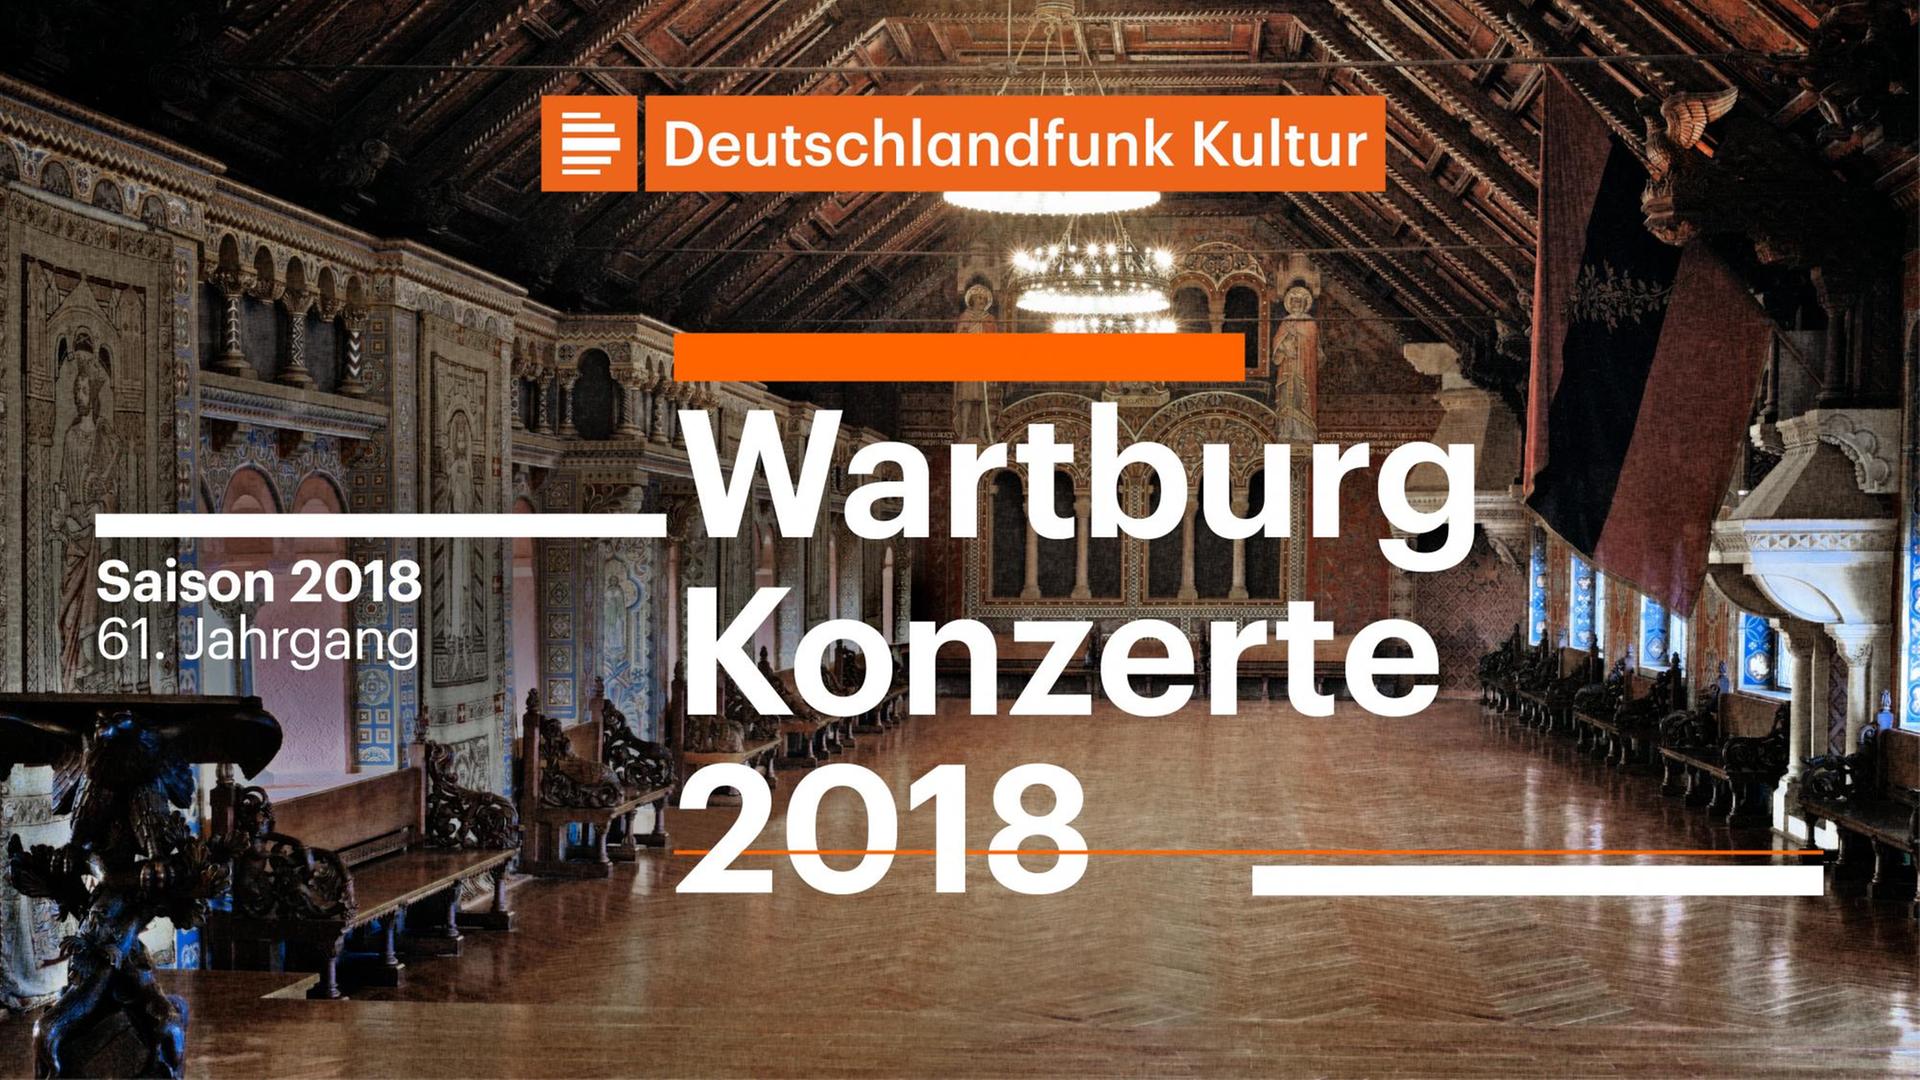 Logo Deutschlandfunk Kultur Wartburg Konzerte 2018 Saison 2018 61.Jahrgang